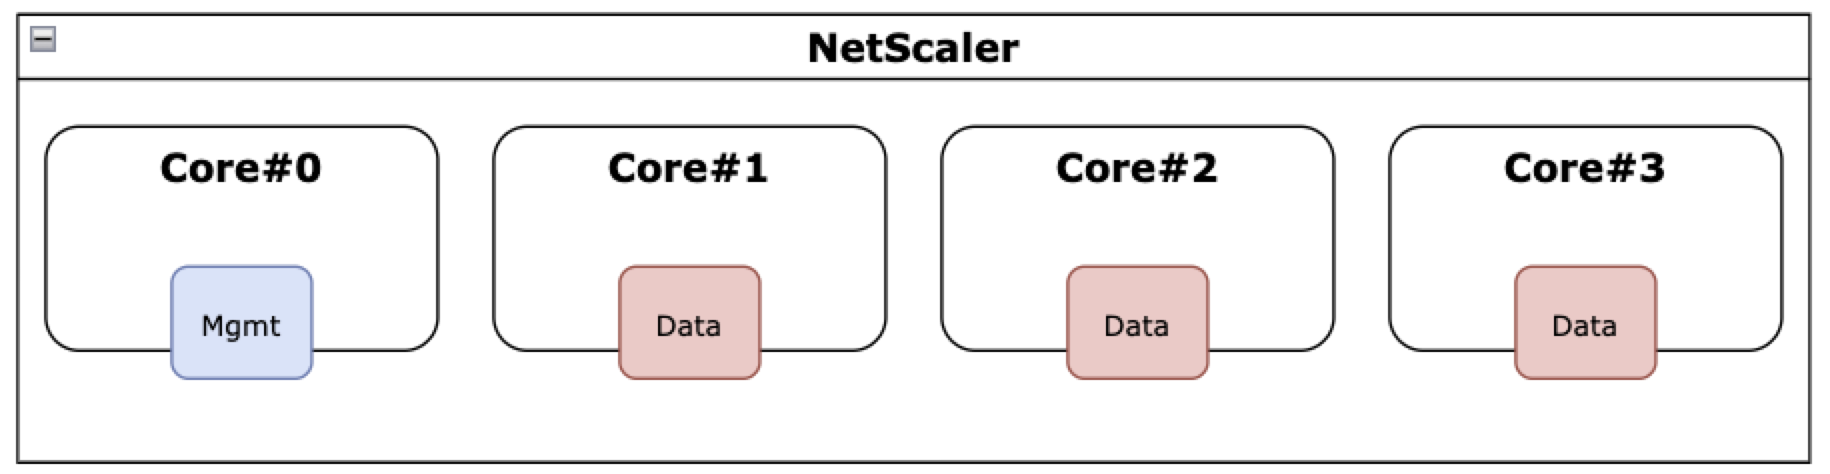 NetScaler sin función SMT